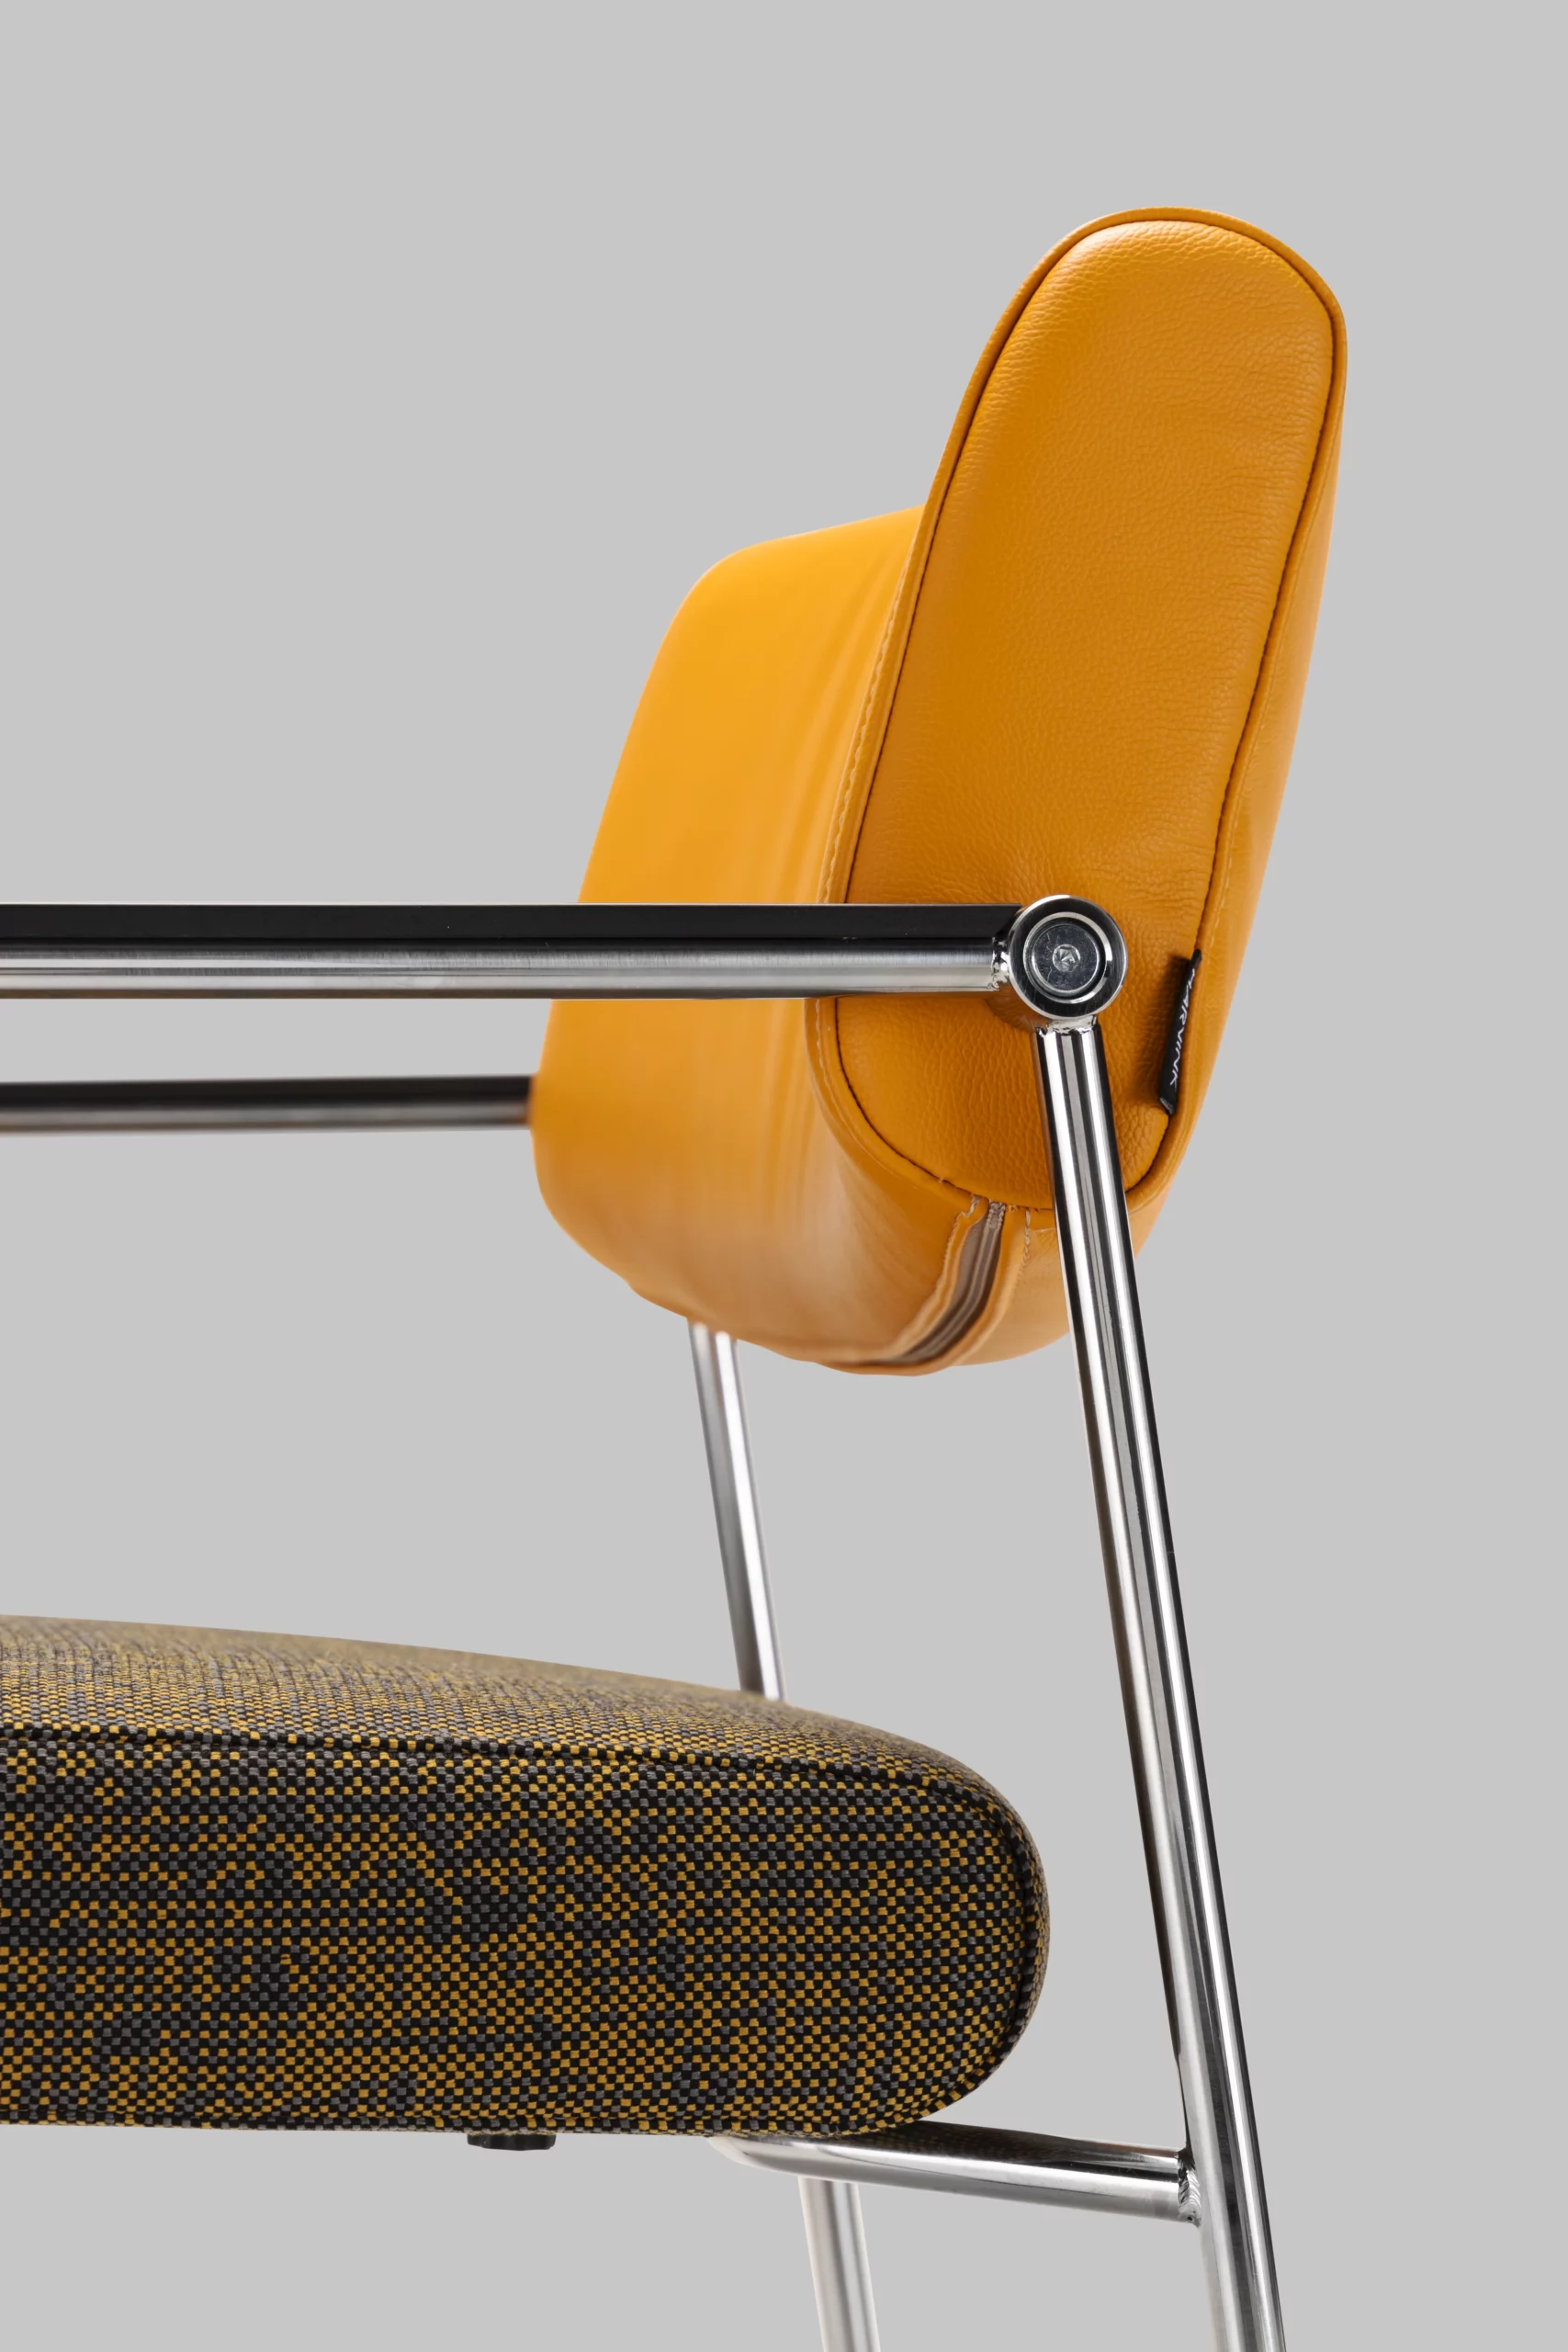 Harvink stoel Duck in combinatie leer geel en stof walker met rollerframe geschuurd chroom